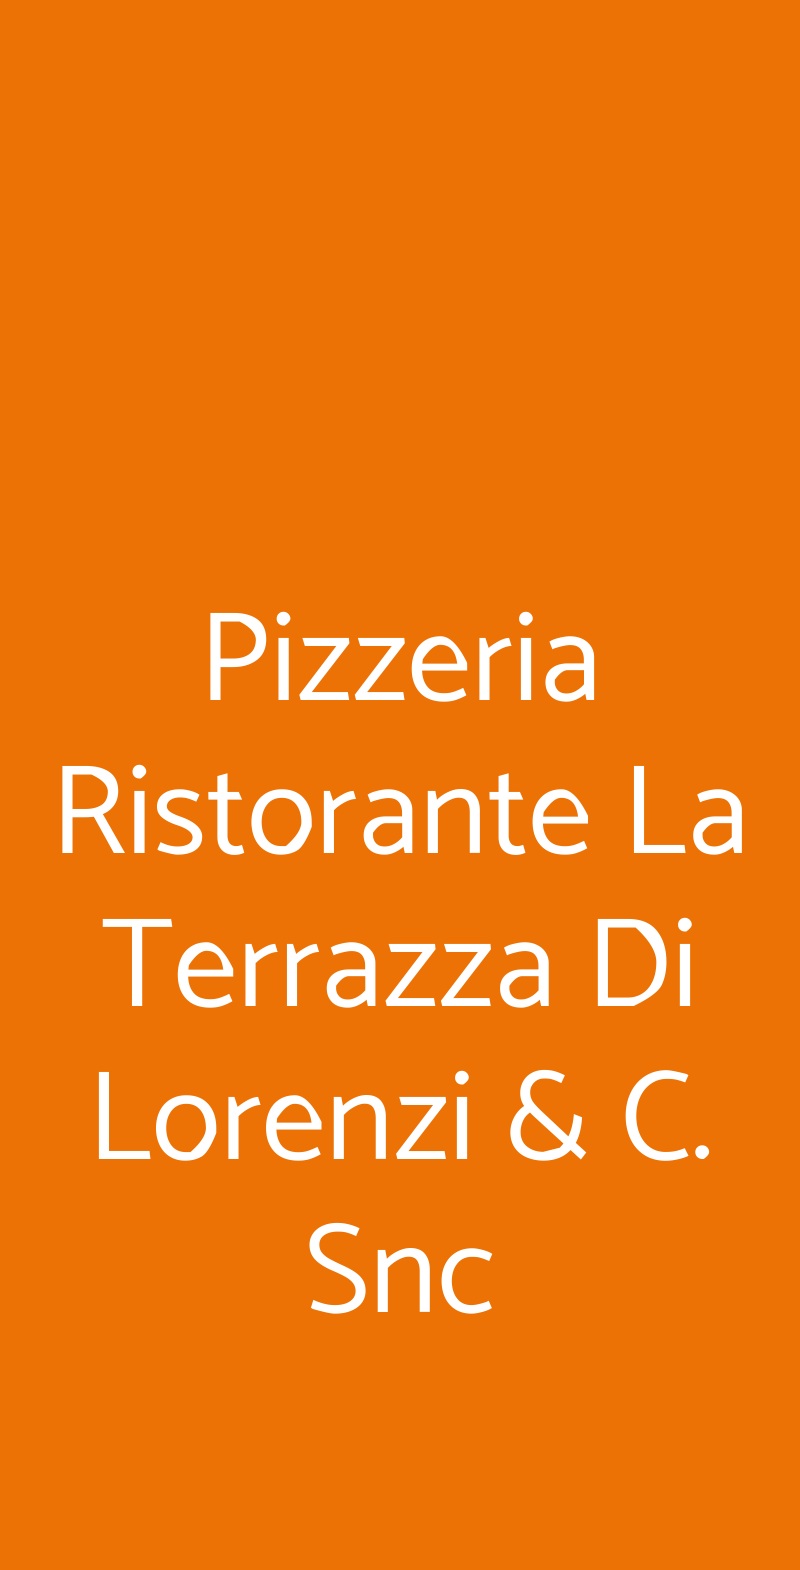 Pizzeria Ristorante La Terrazza Di Lorenzi & C. Snc Castiglione Delle Stiviere menù 1 pagina